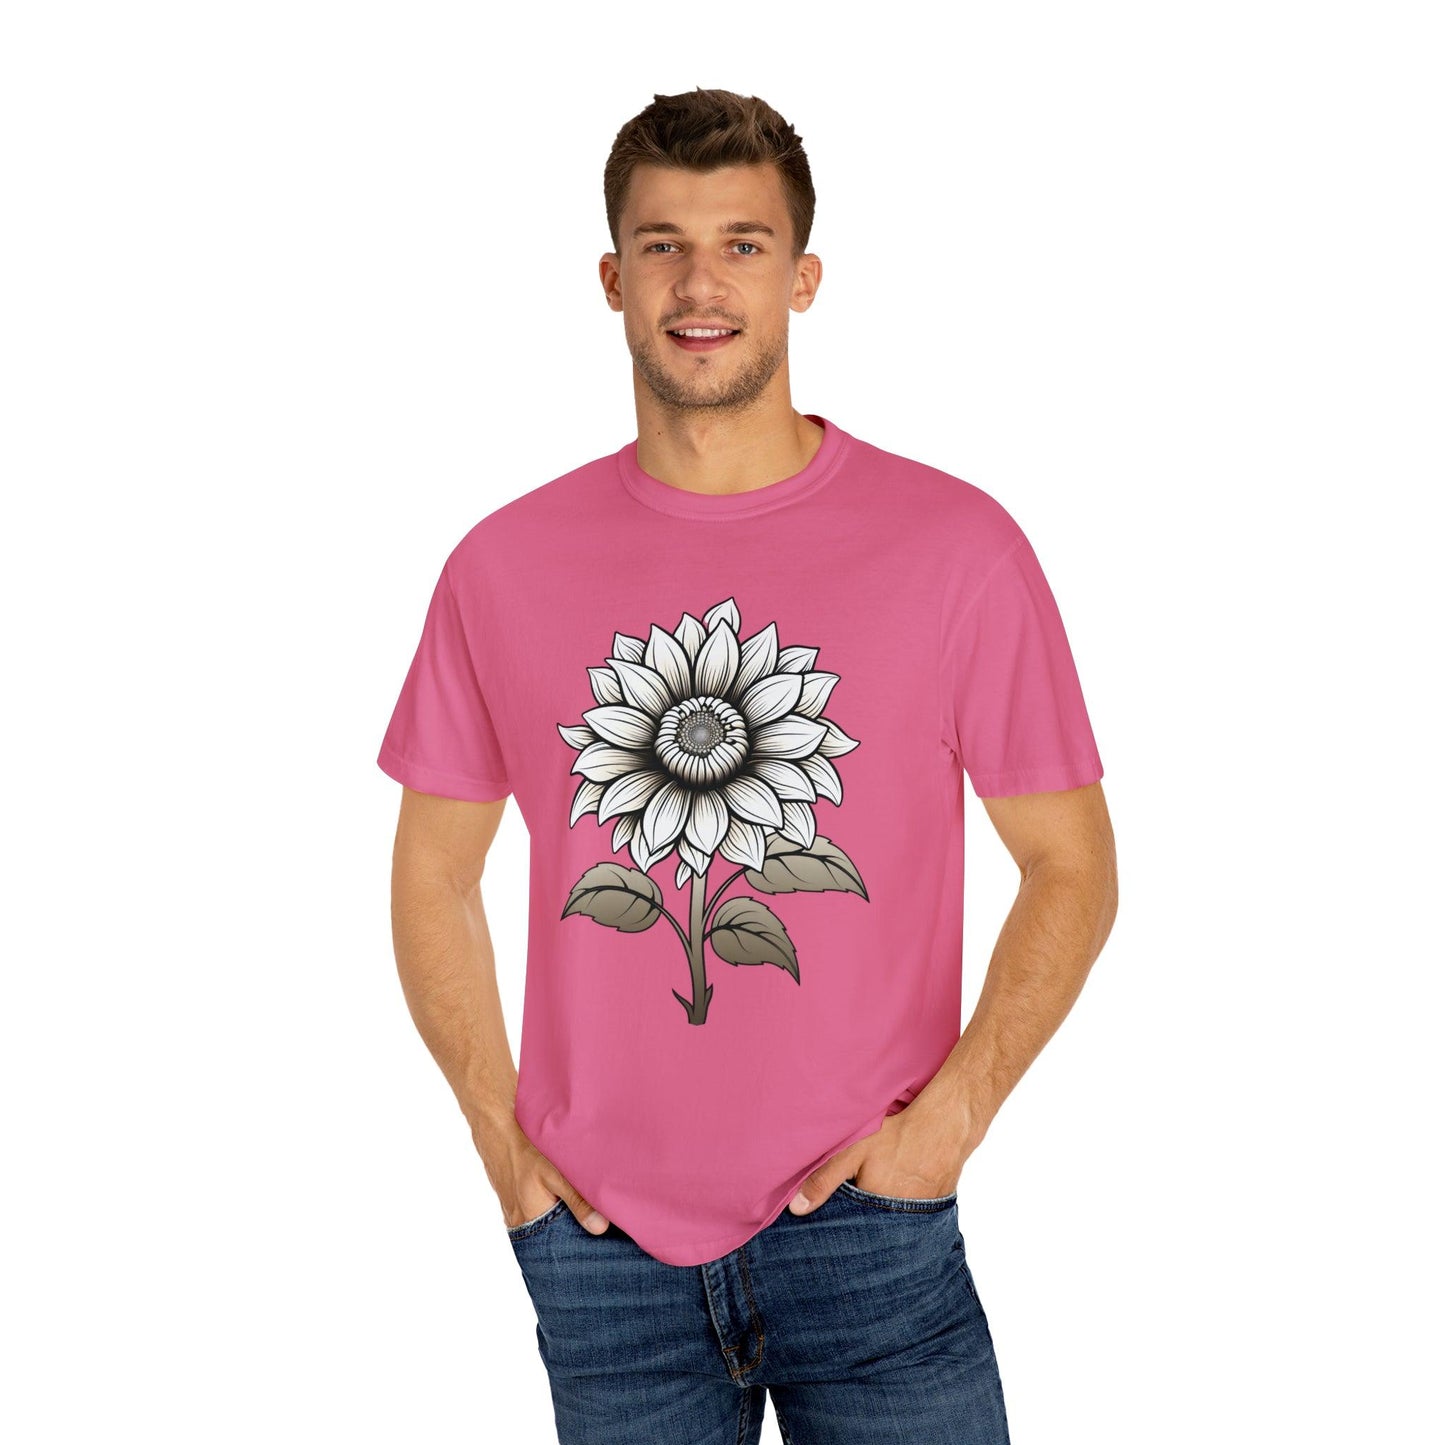 Sunflower Shirt Vintage Flower Shirt Aesthetic, Floral Graphic Tee Floral Shirt Flower T-shirt, Wild Flower Shirt Gift For Her - Giftsmojo